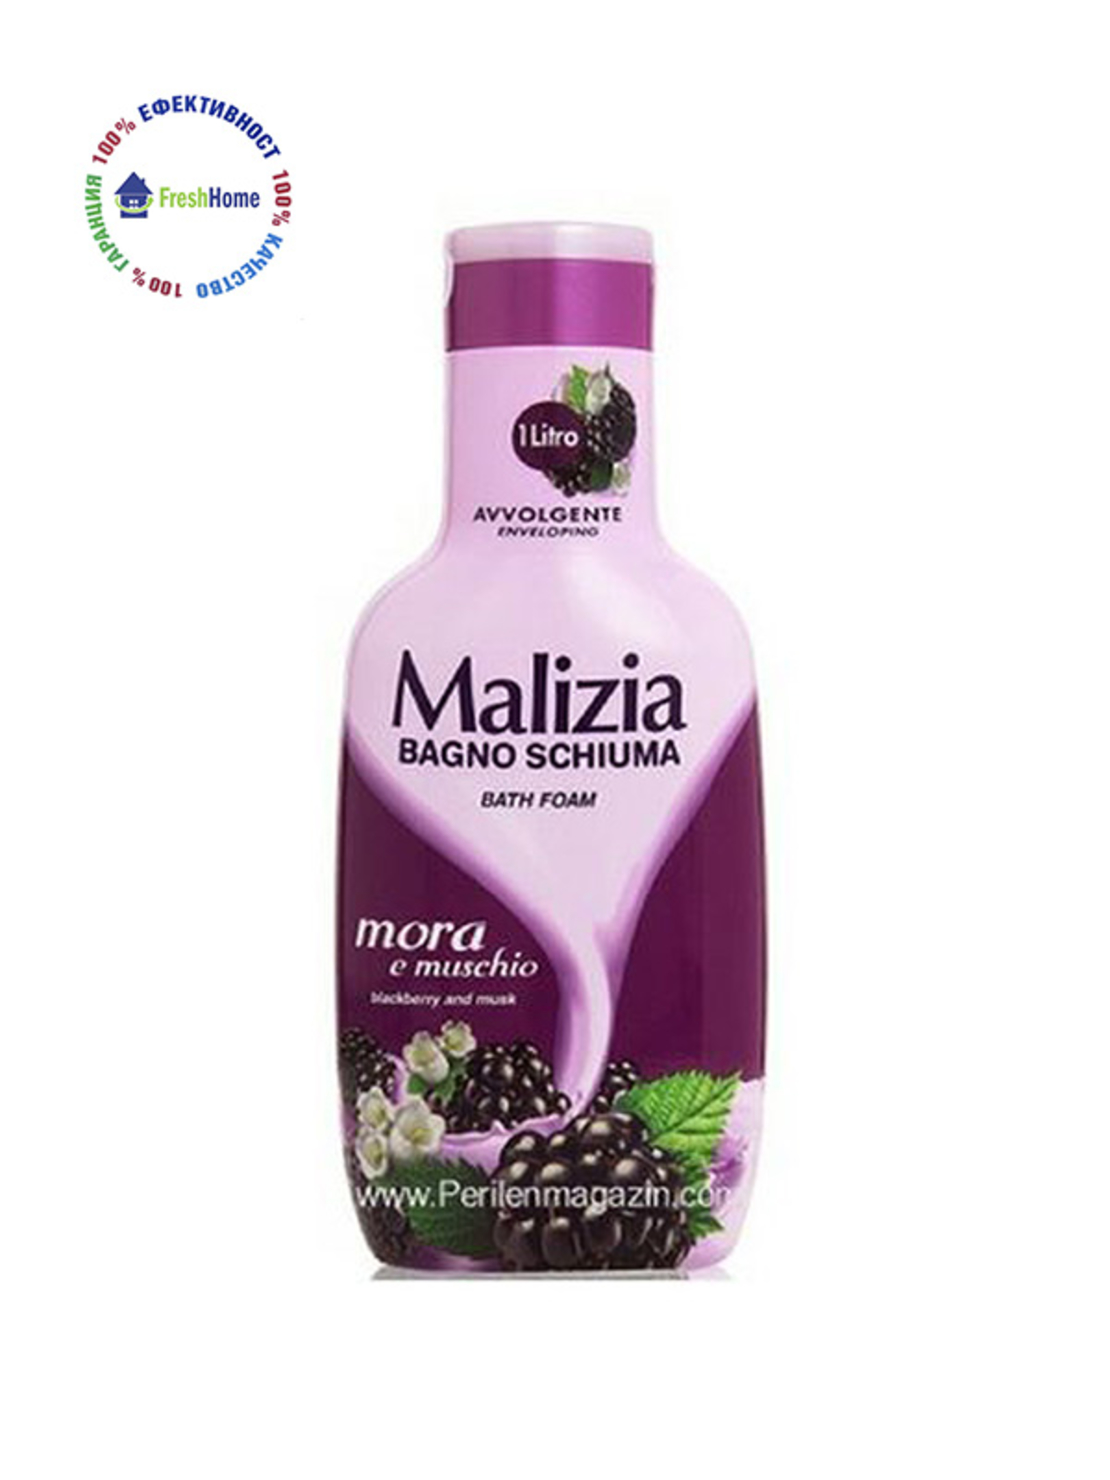 Malizia душ гел/пяна за вана 1л. с къпина и мускус